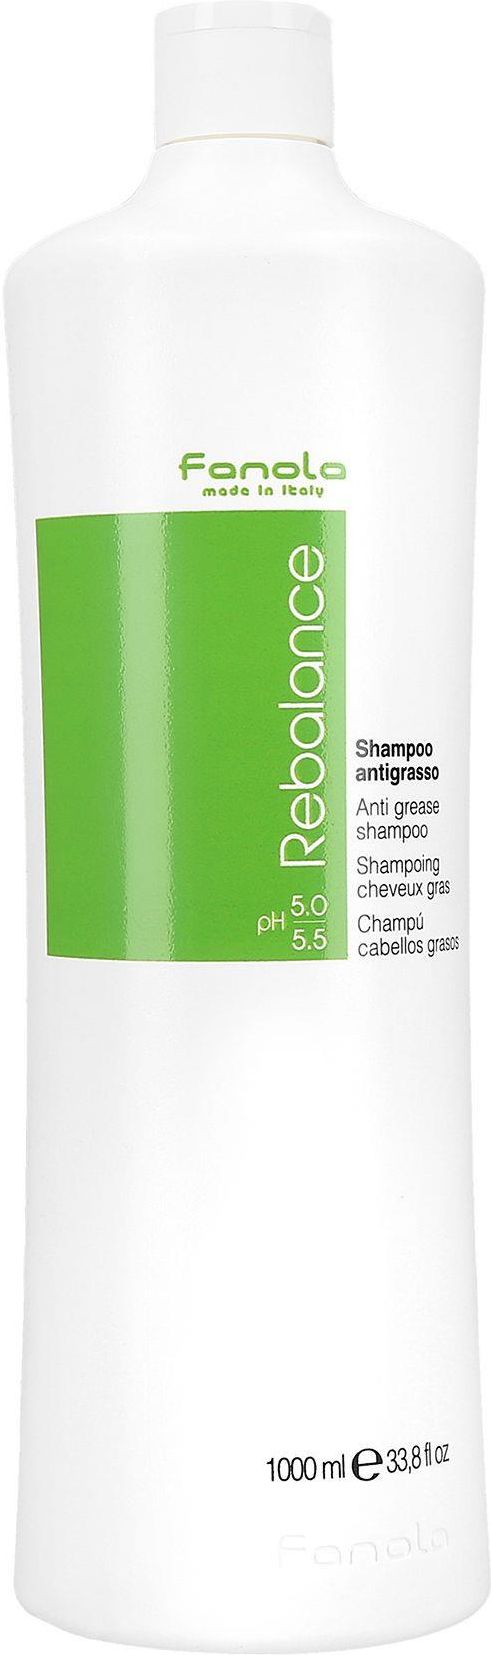 fanola rebalance szampon do włosów tłustych